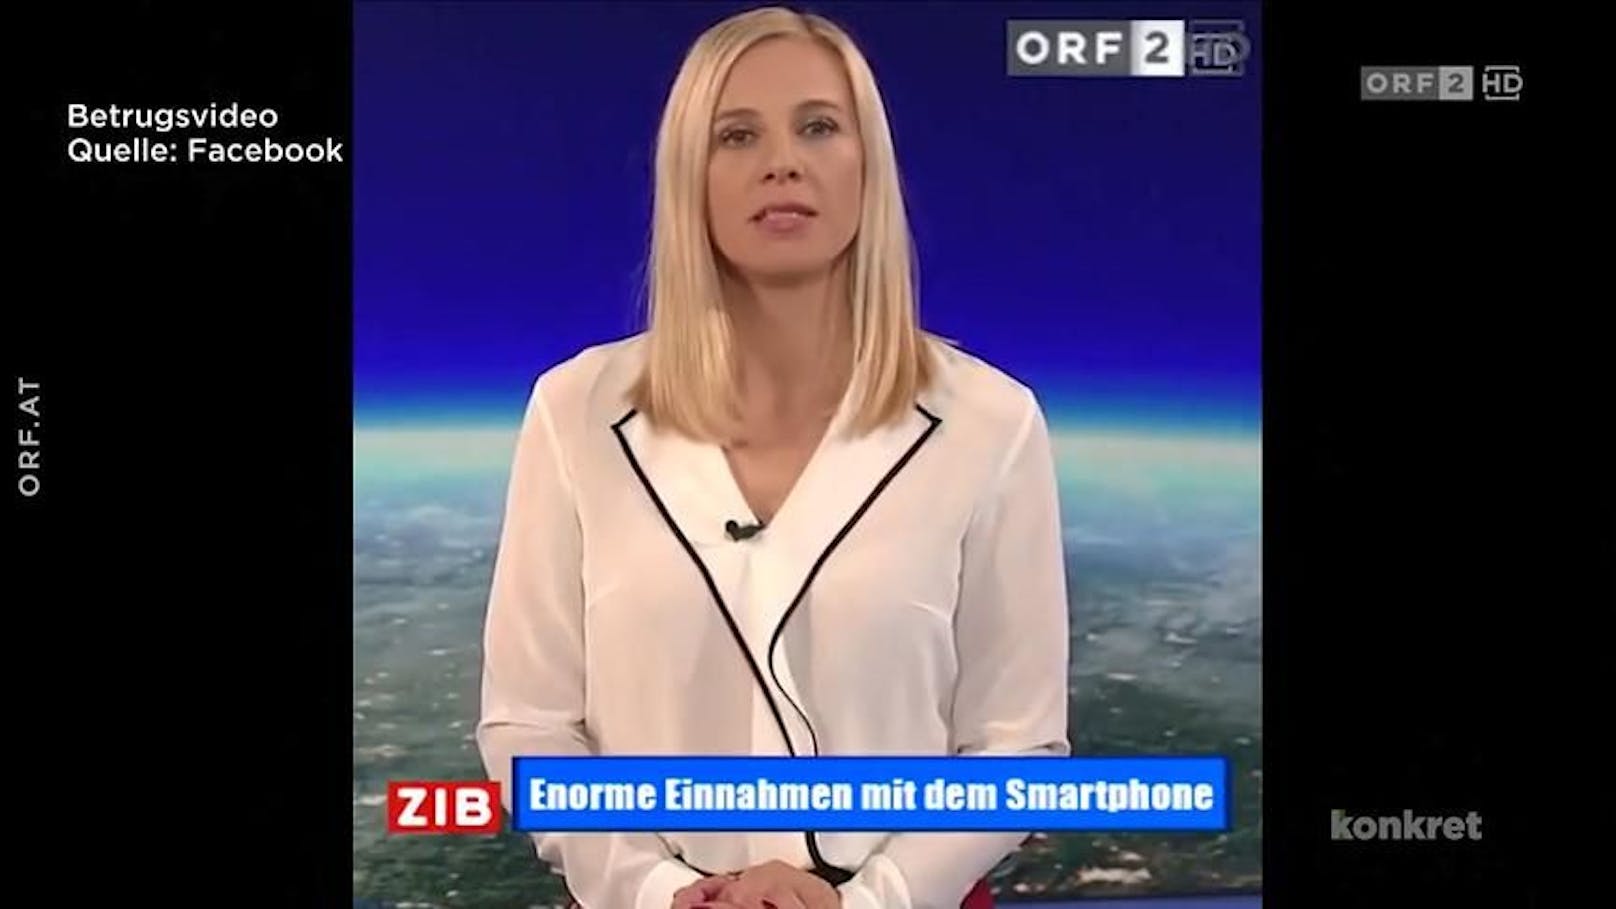 Auf Facebook kursieren Betrügervideos mit ORF-Stars wie Susanne Höggerl.